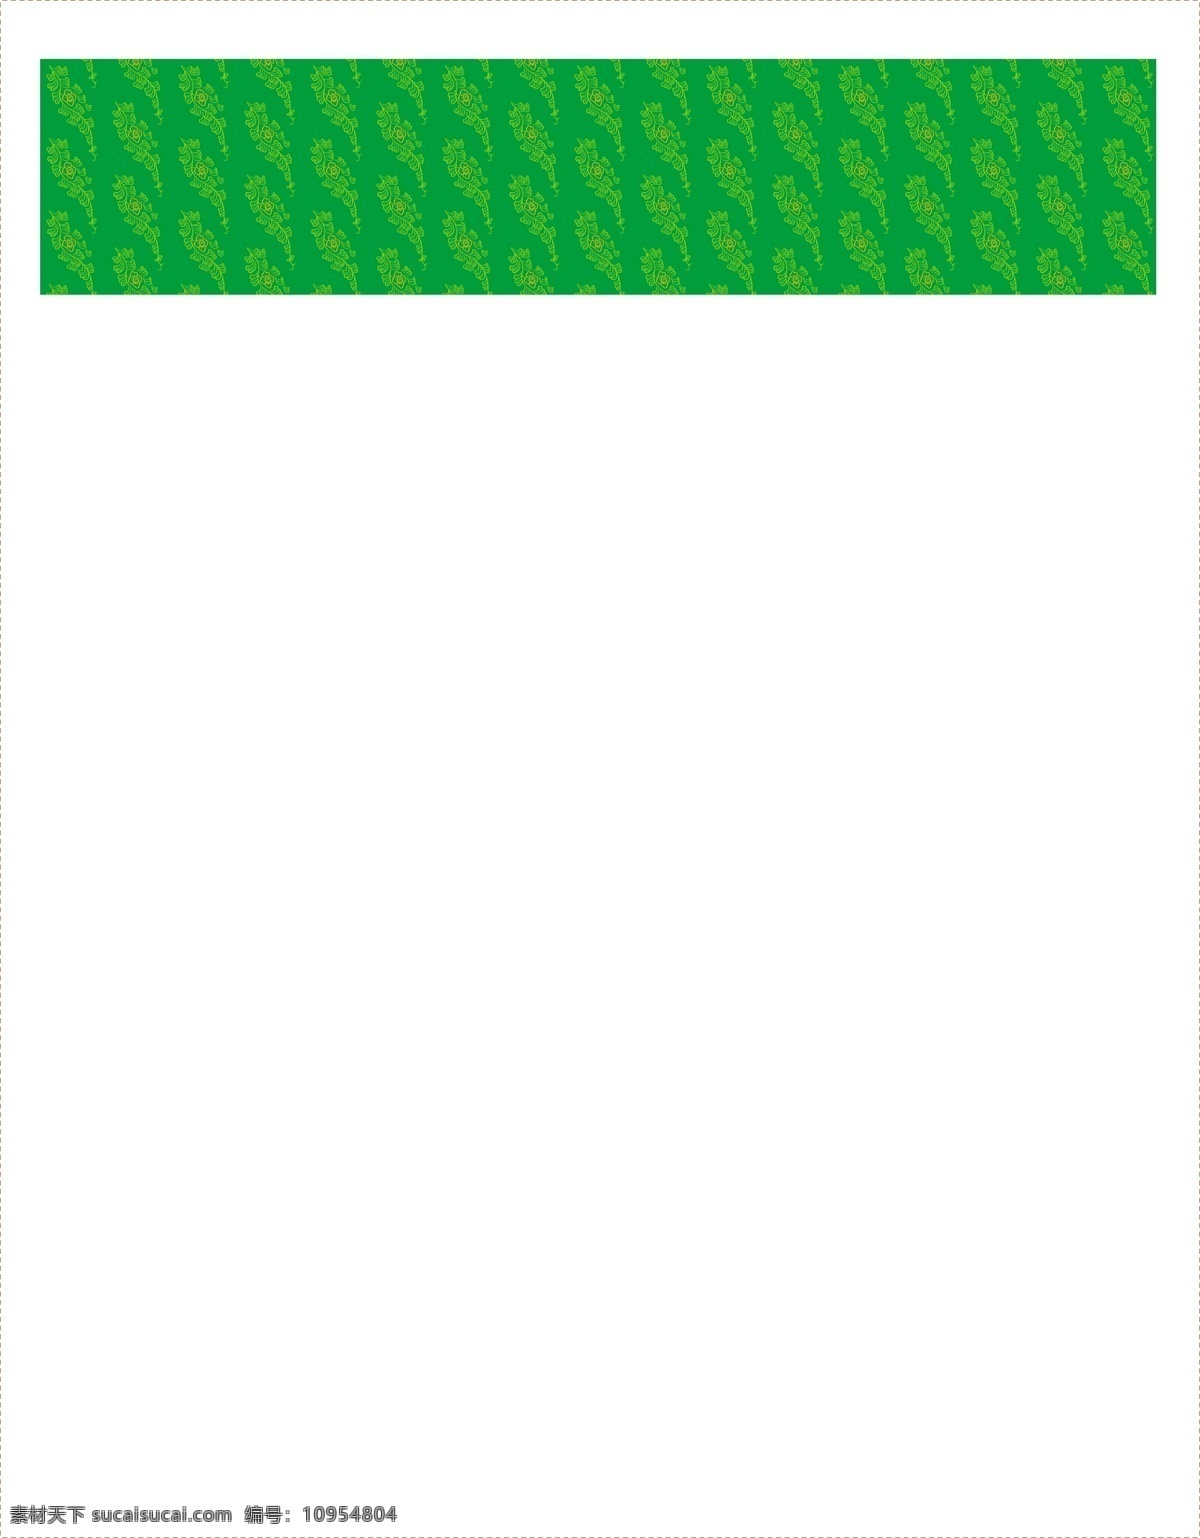 斑点 背景 壁纸 底纹 底纹背景 底纹边框 地板 地毯图案 广告 绿色斑点背景 绿色 墙纸 图案 图腾 线条 花纹 条纹 花样 卡通 矢量 家居装饰素材 室内设计